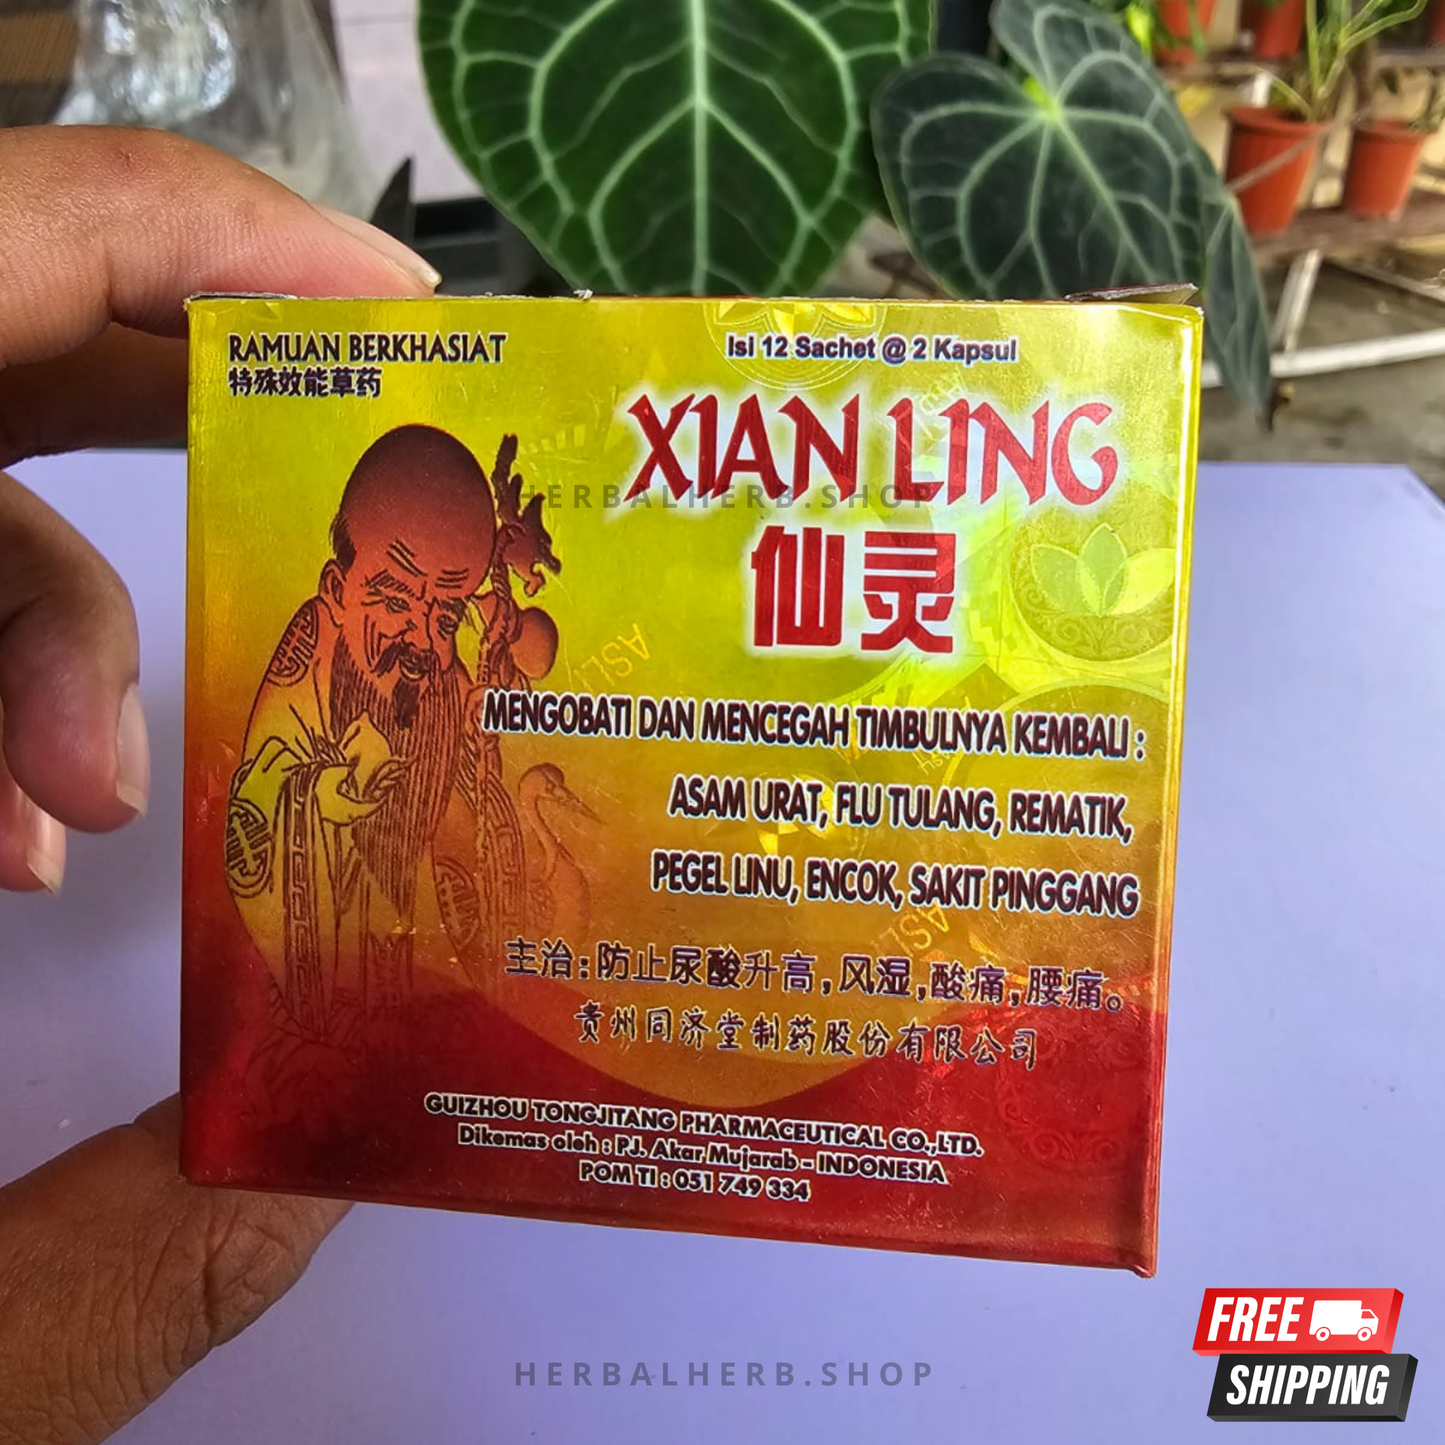 10 Box Xianling Capsules 100% Original | herbalherb.shop